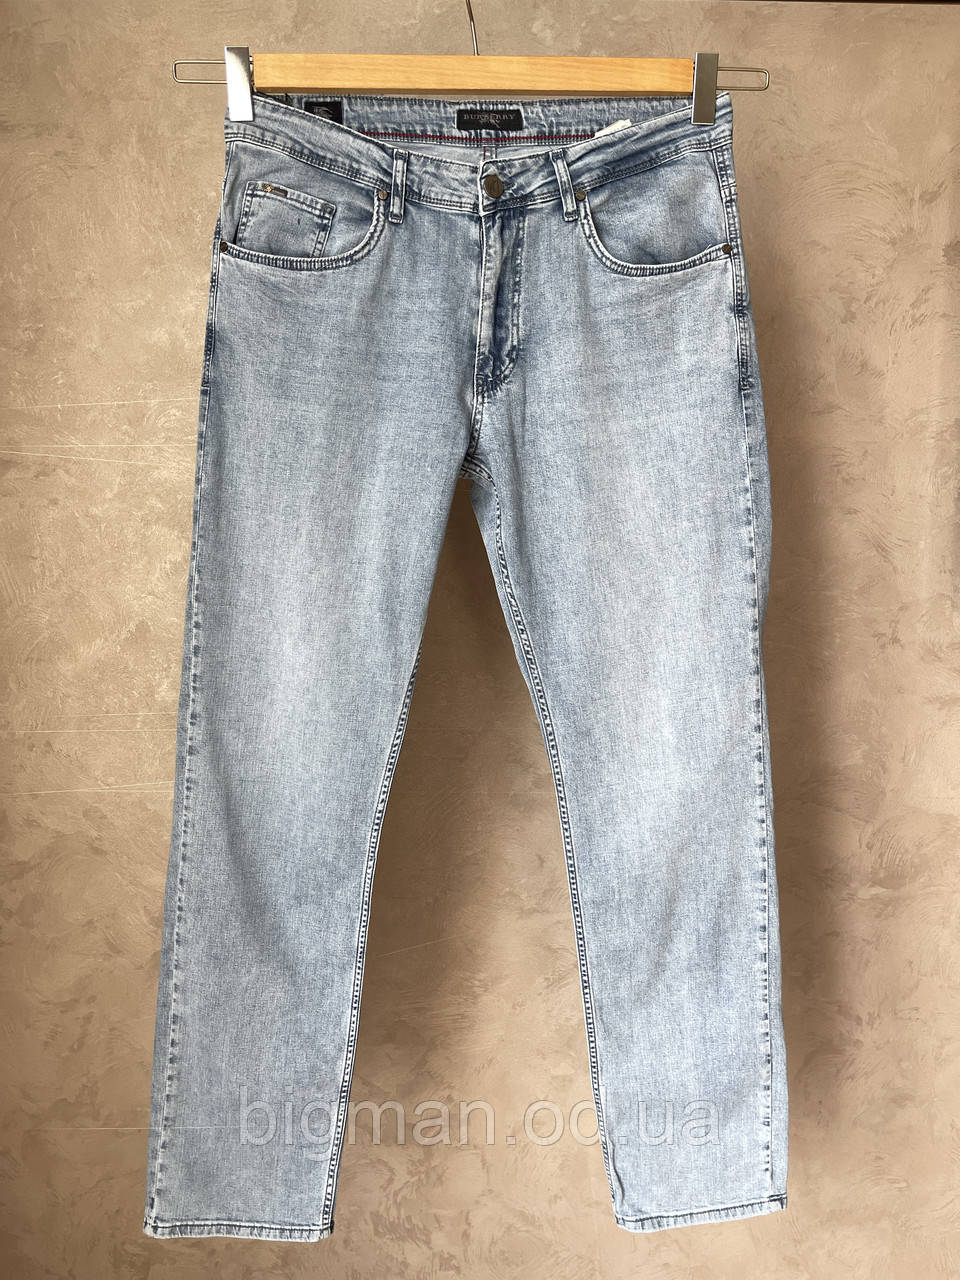 Чоловічі джинси на ремені Grand la Vita 36-42 розміру великого батального розміру Туреччина, фото 1